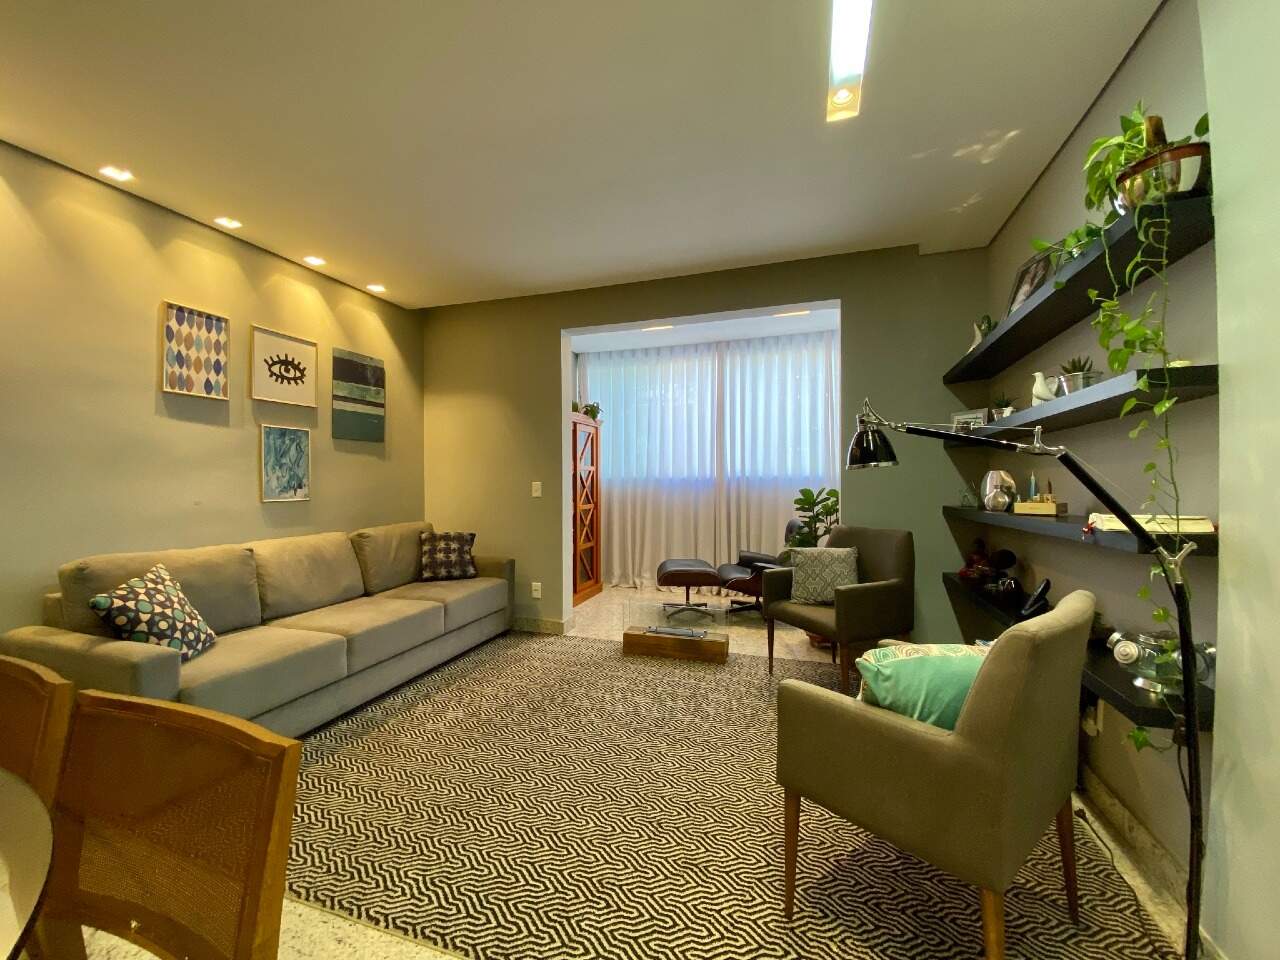 Imagem do imóvel Apartamento à venda, 4 quartos, 1 suíte, 2 vagas, Buritis - Belo Horizonte/MG